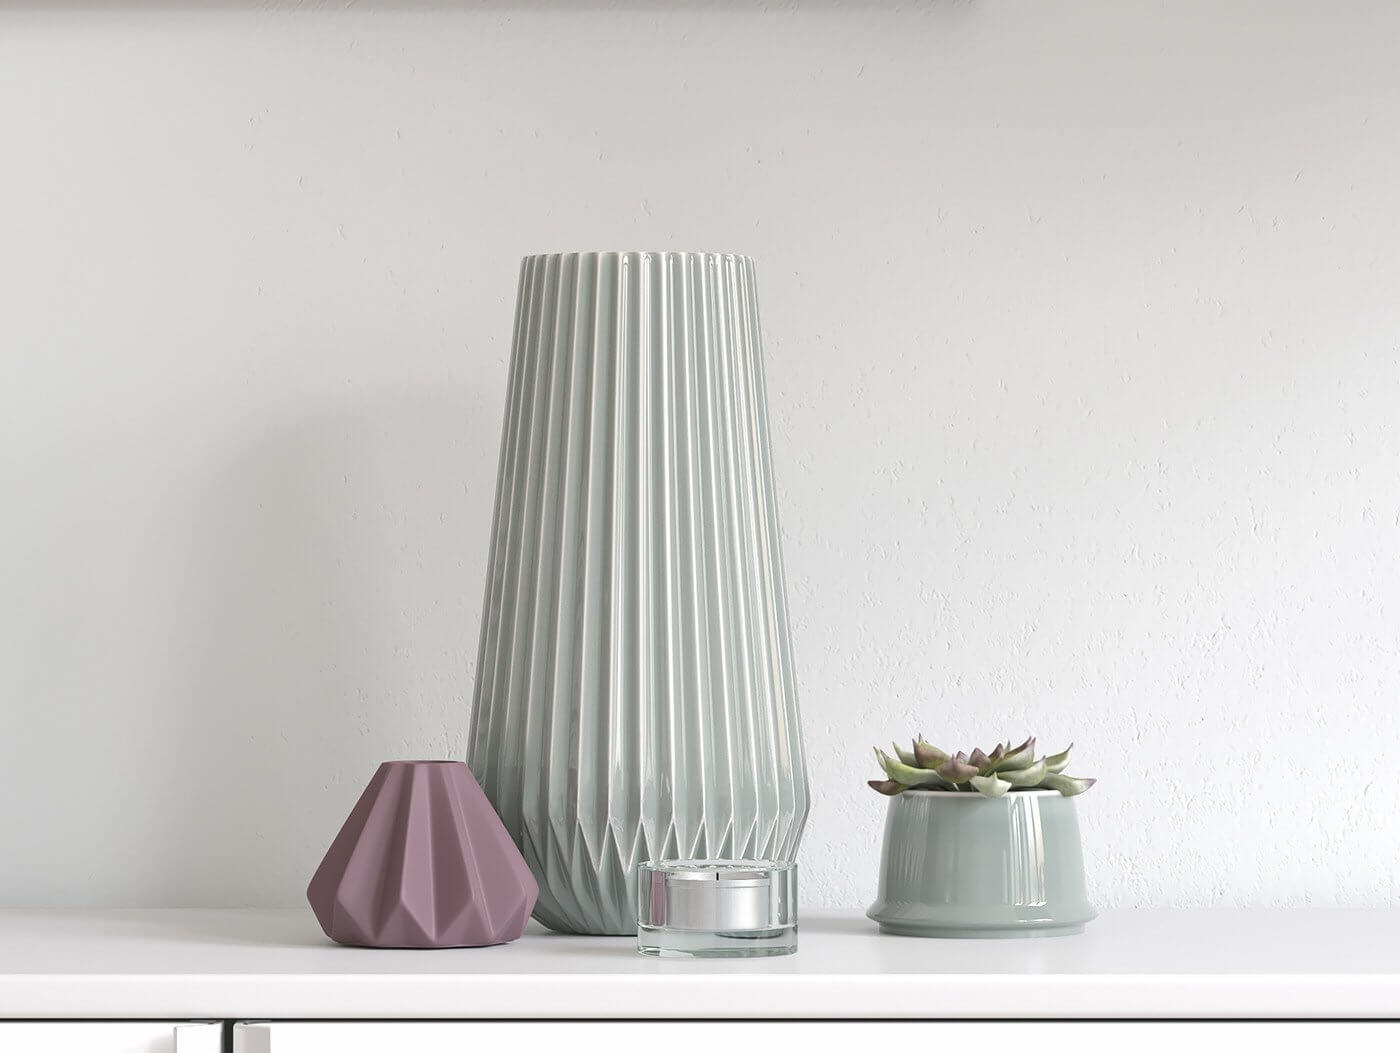 Apartment 5th floor design accesoires living room vases - cgi visualization